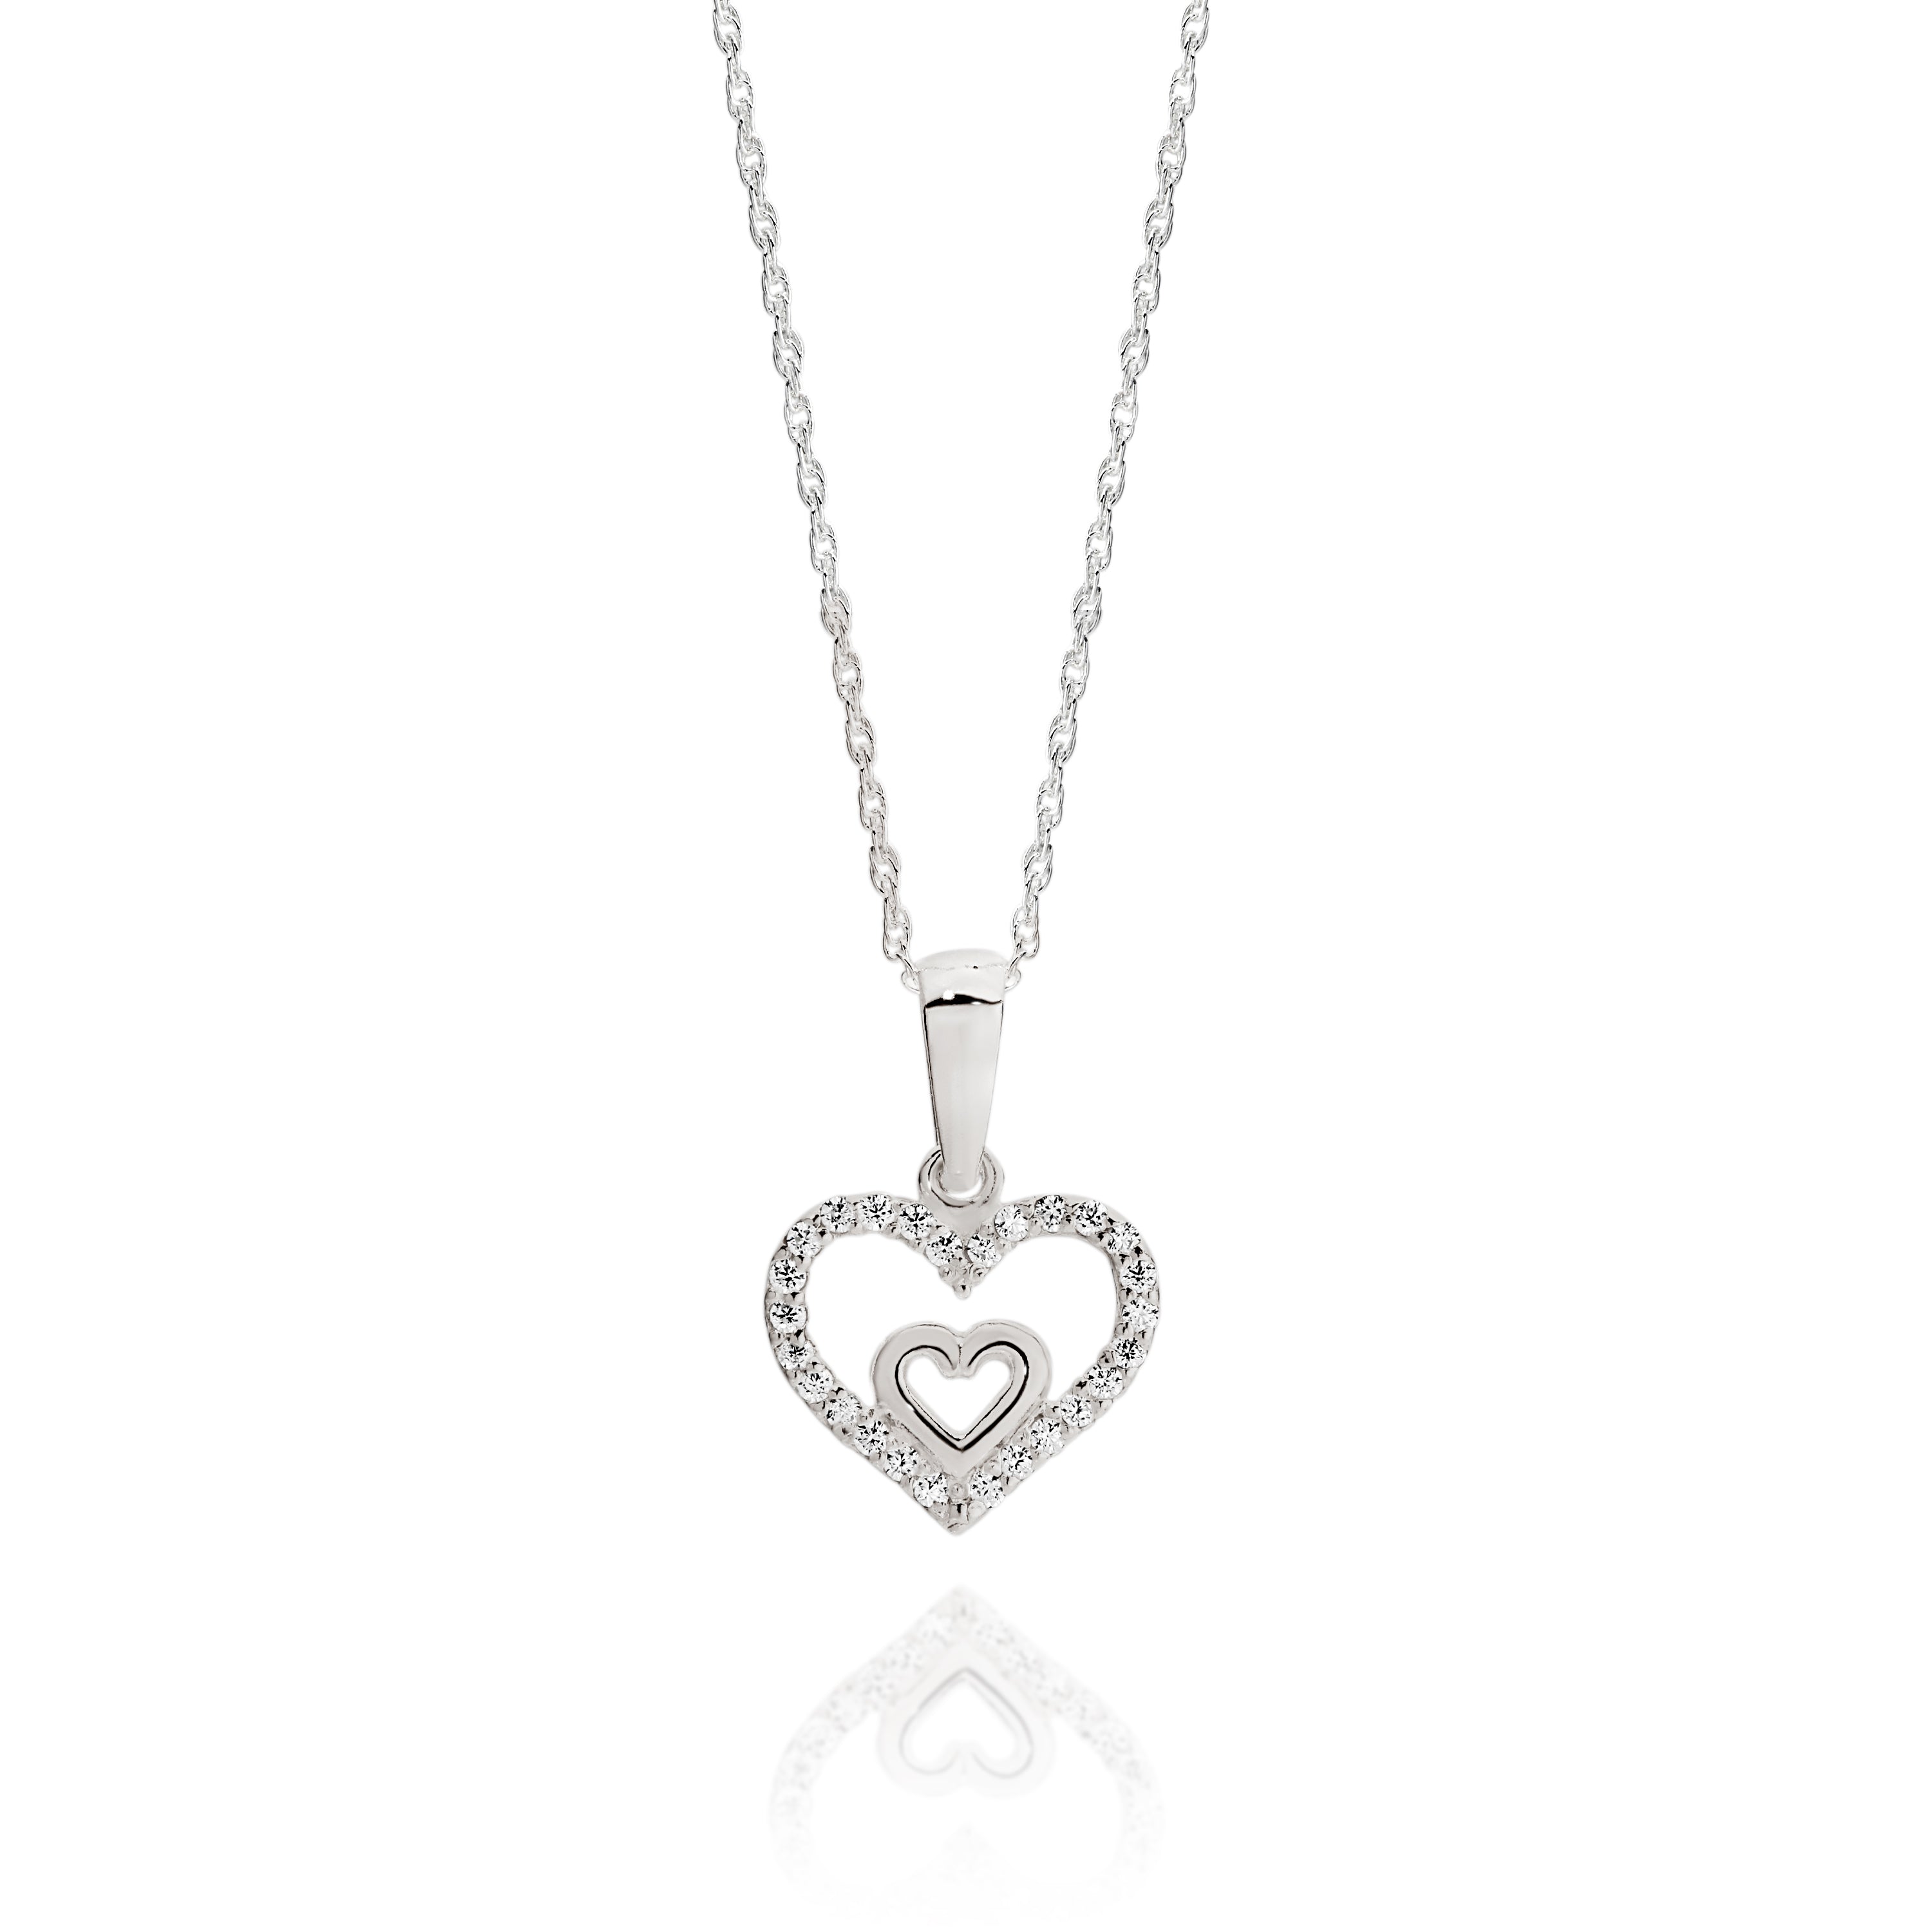 Silver cubic zirconia heart necklace